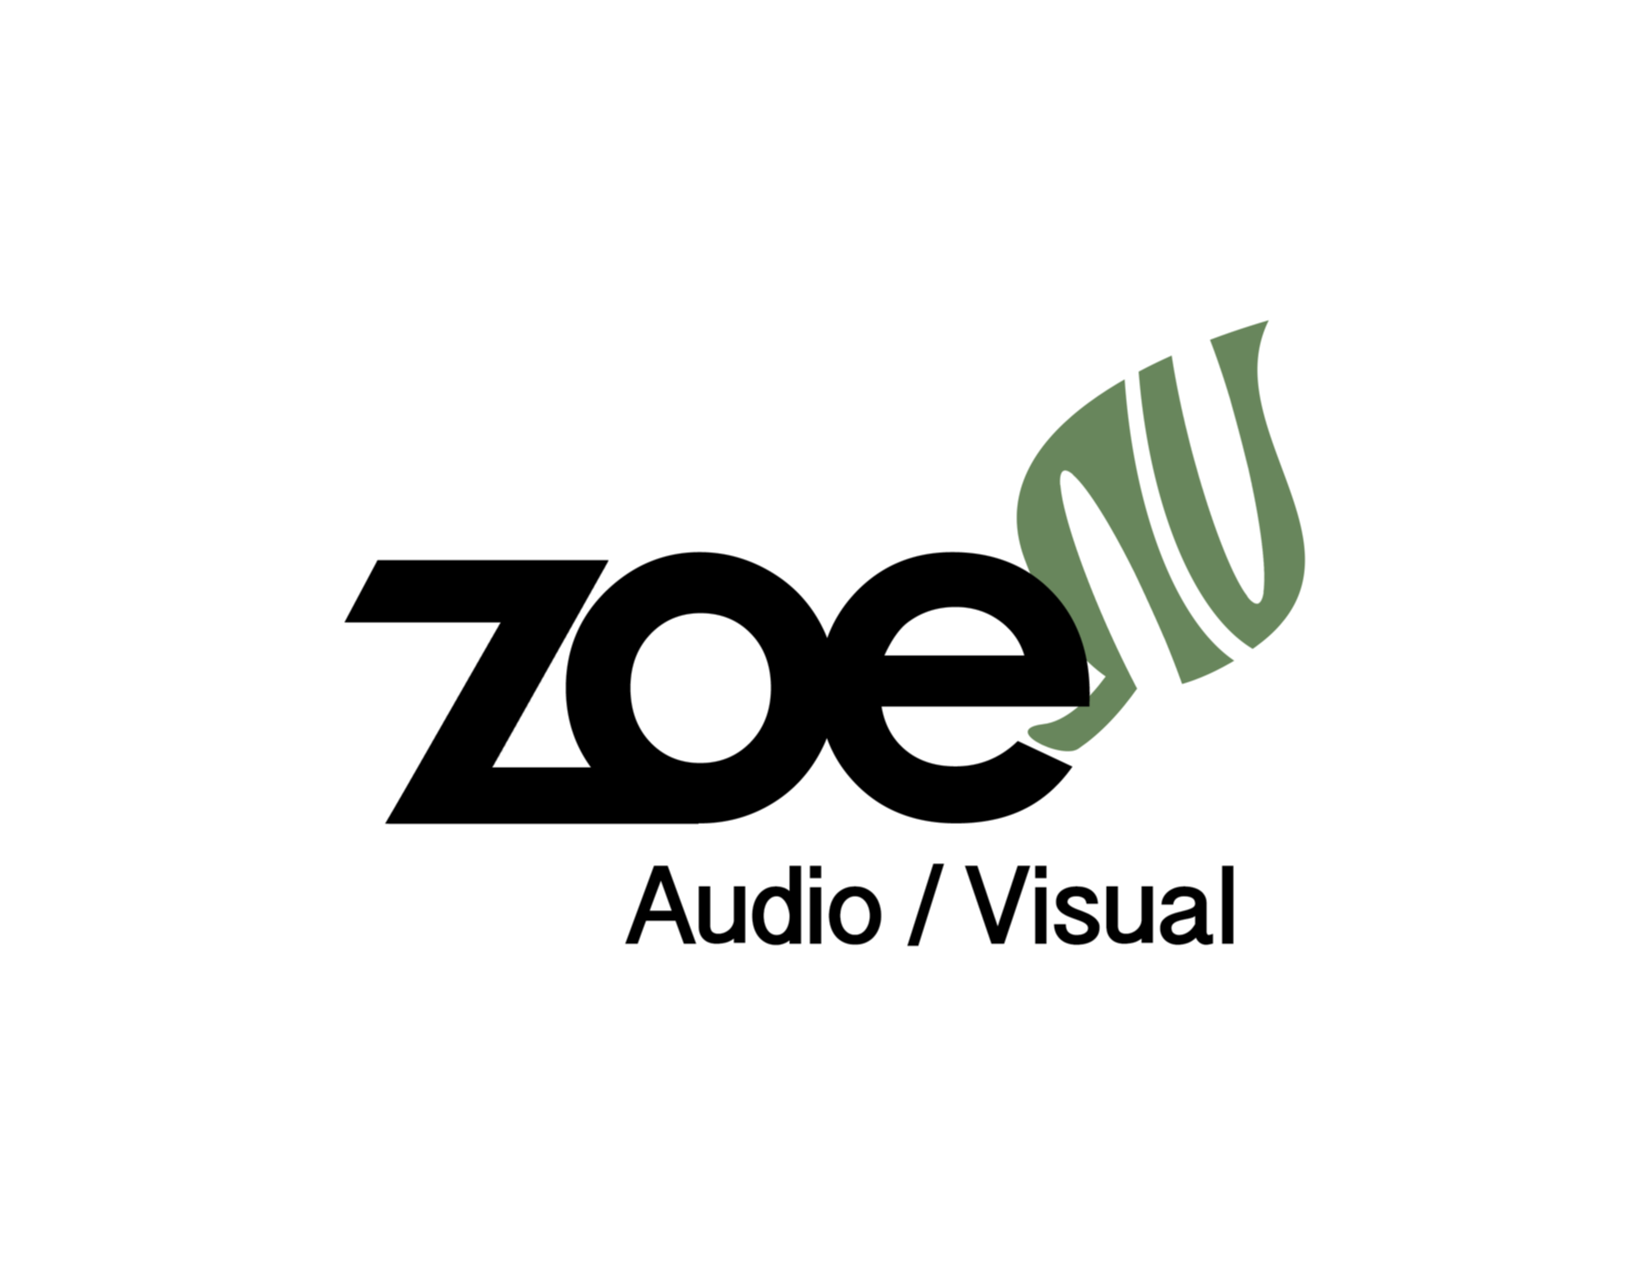 Zoe_Audio_Visual_Logo_PS